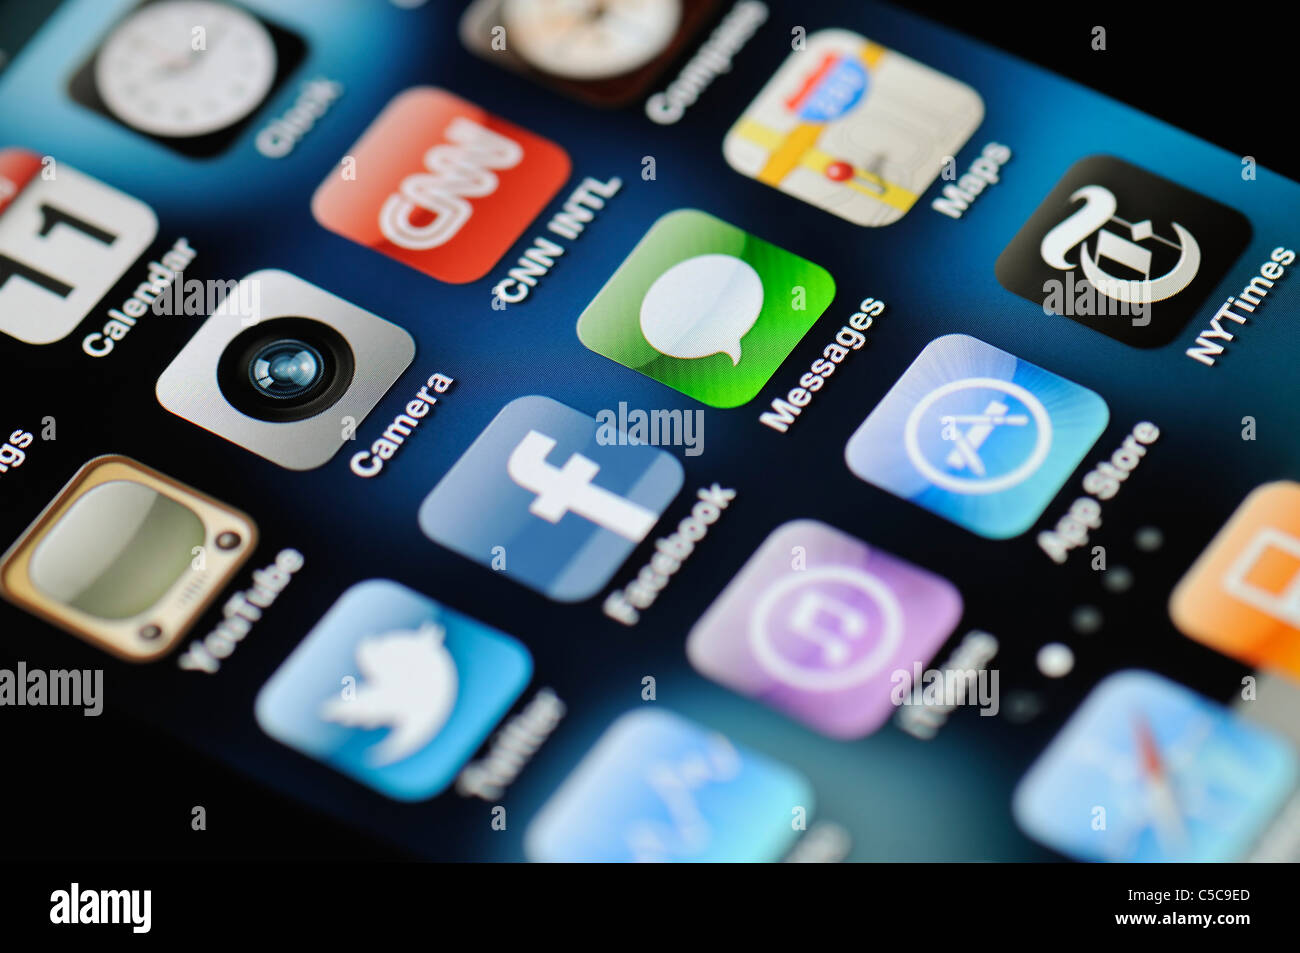 Eine Nahaufnahme von einem beleuchteten Apple iPhone 4 Bildschirm zeigt den App Store und verschiedenen apps Stockfoto